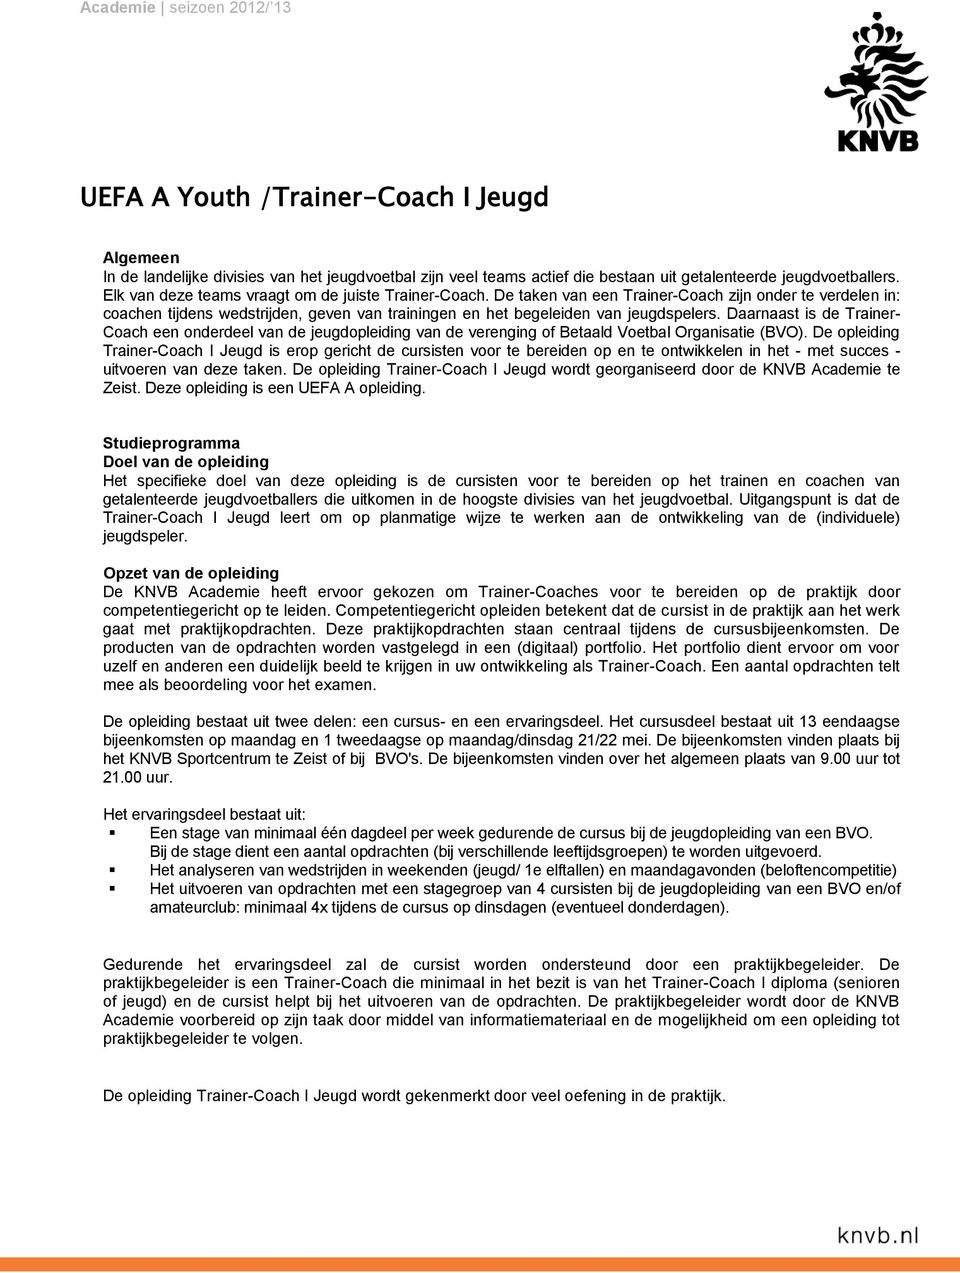 Daarnaast is de Trainer- Coach een onderdeel van de jeugdopleiding van de verenging of Betaald Voetbal Organisatie (BVO).